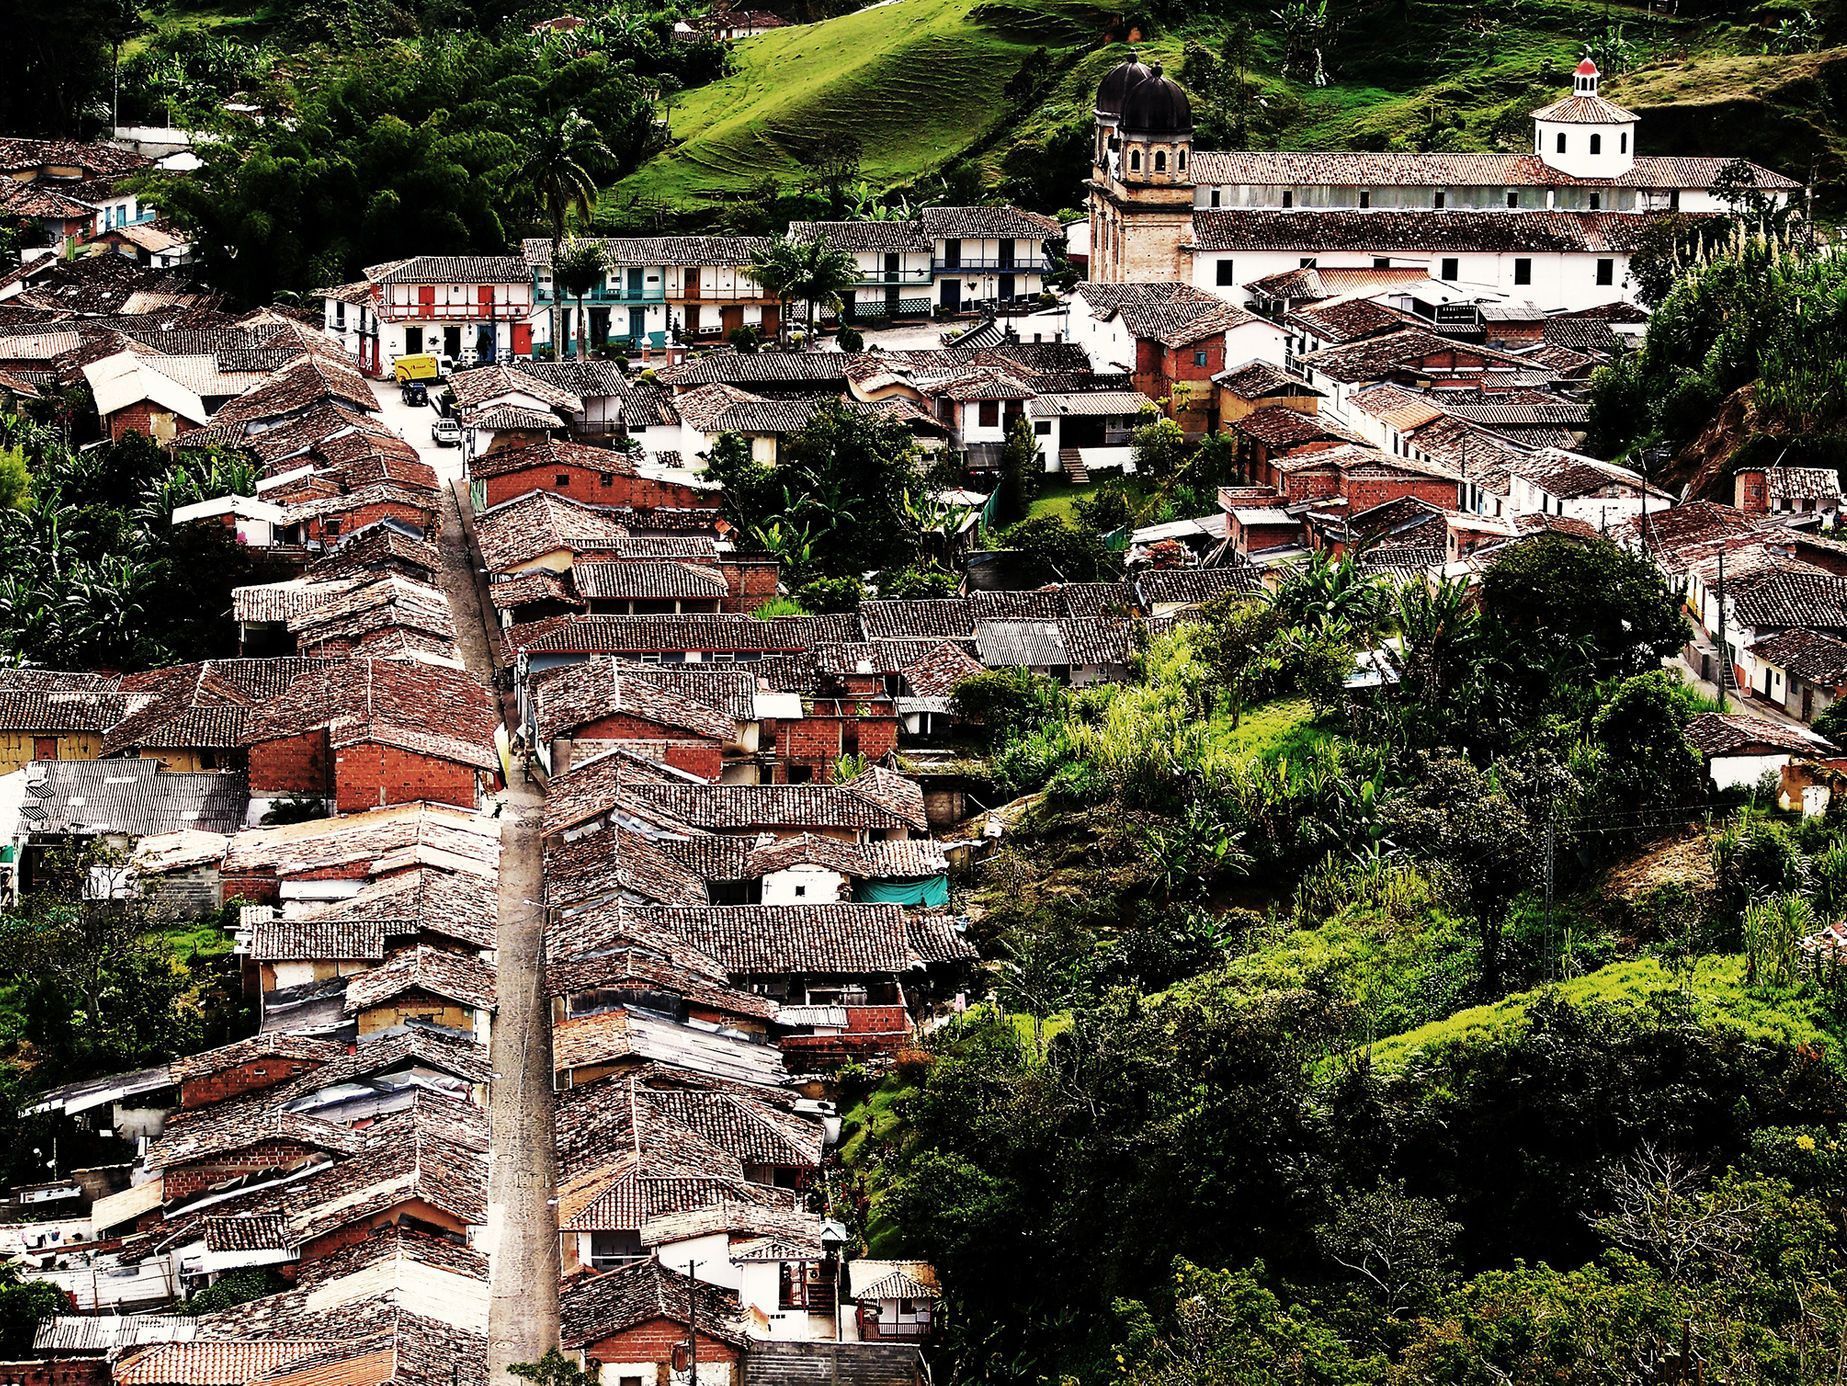 Kolumbie. Reportáž z míst, kde Escobar snoval vraždy